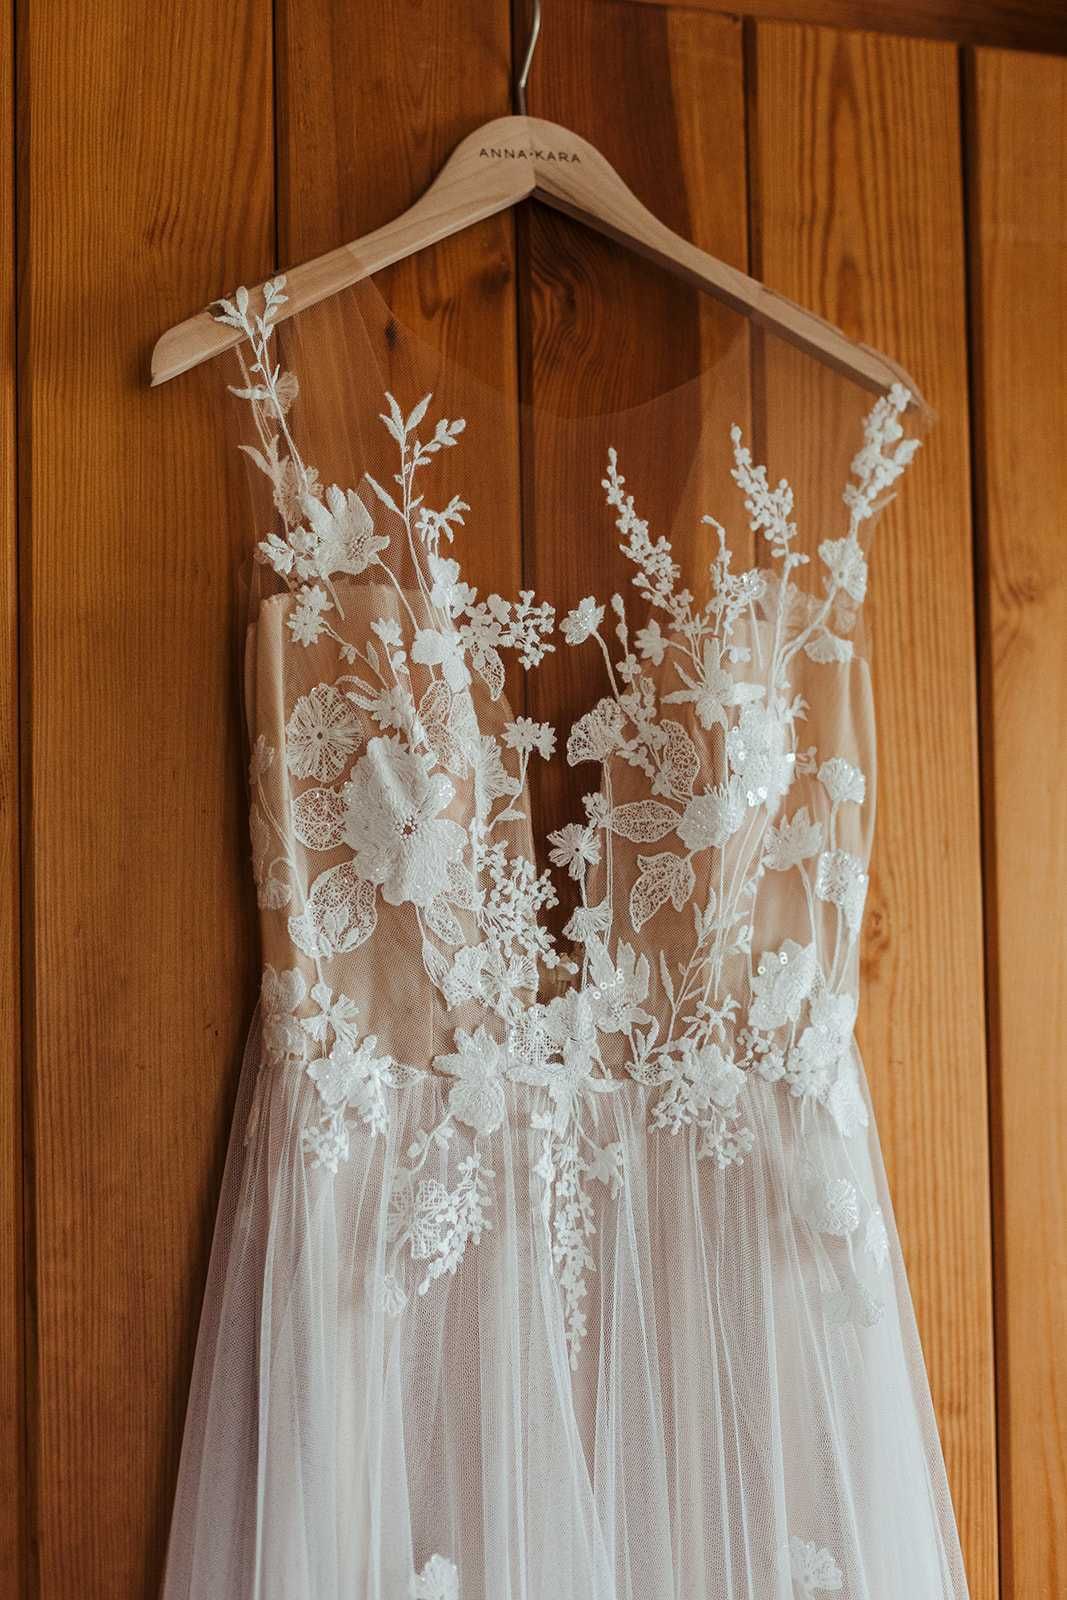 Suknia ślubna Anna Kara Primrose r38 (169 cm wzrostu + ob